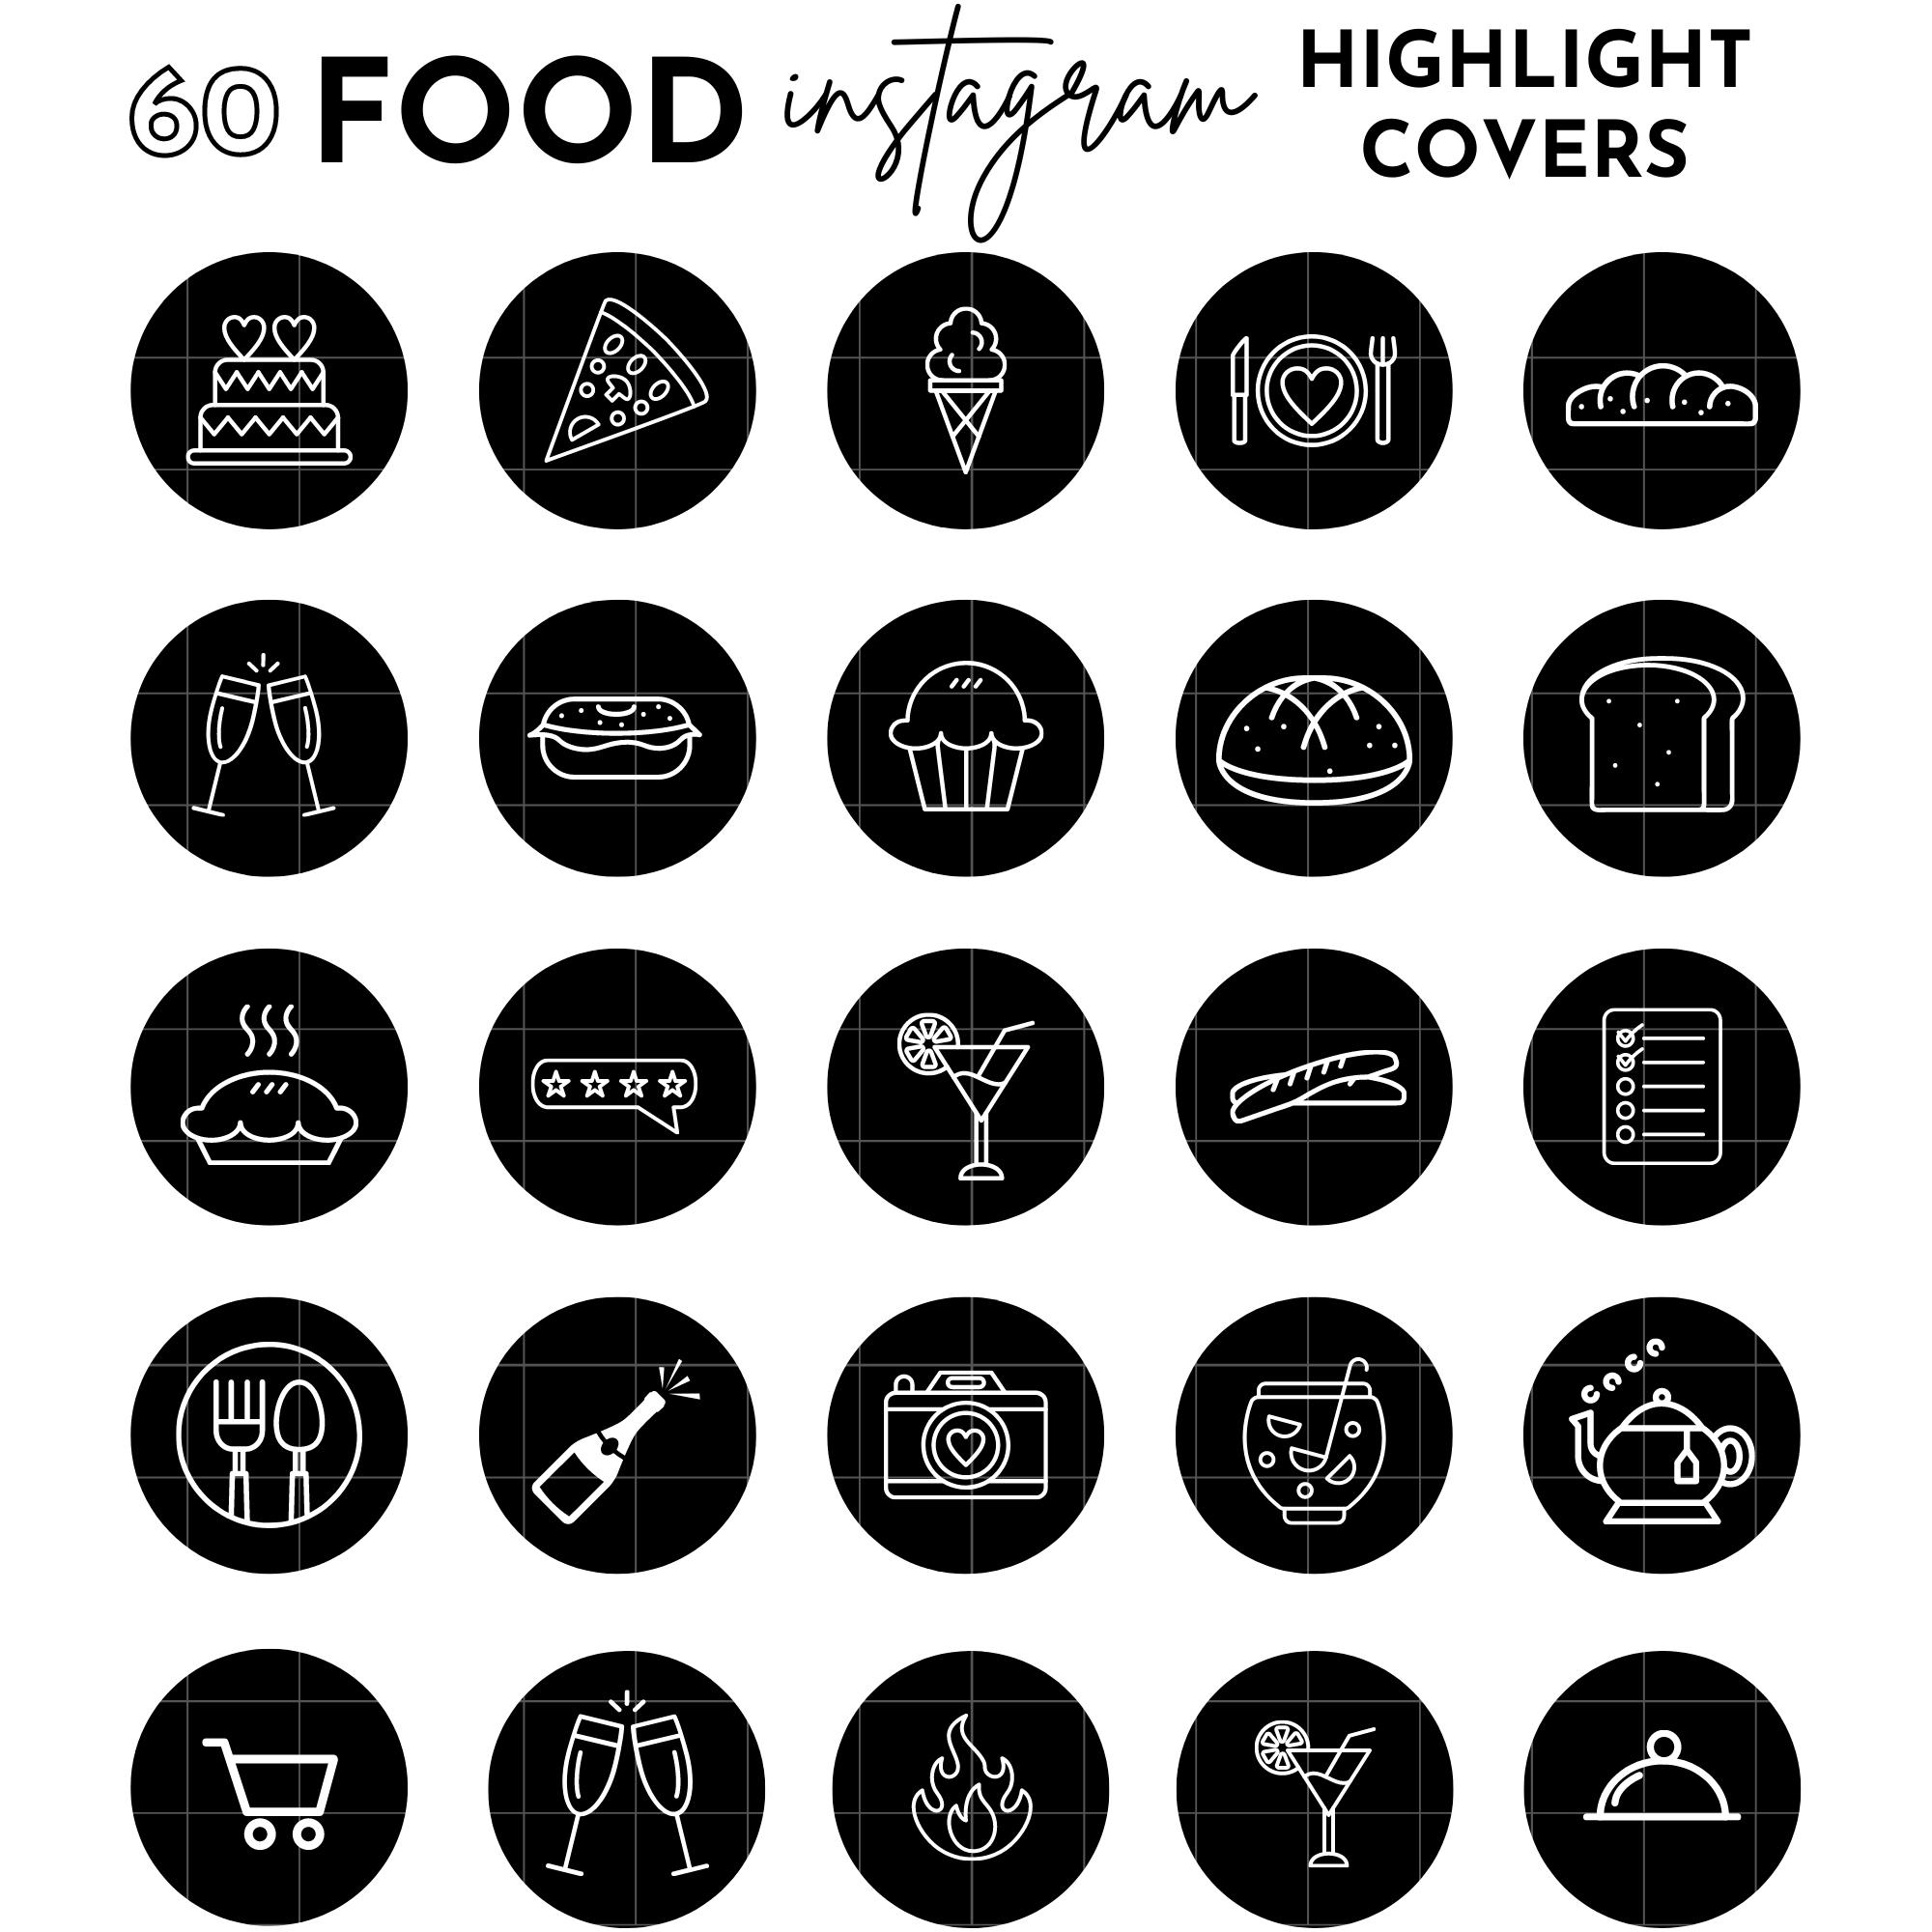 Food Instagram icons: Với những icon Food Instagram, bạn sẽ được trải nghiệm những trải nghiệm thú vị khi khám phá thế giới ẩm thực. Chúng sẽ giúp bạn mang đến cho người xem một trải nghiệm độc đáo và vô cùng thu hút.